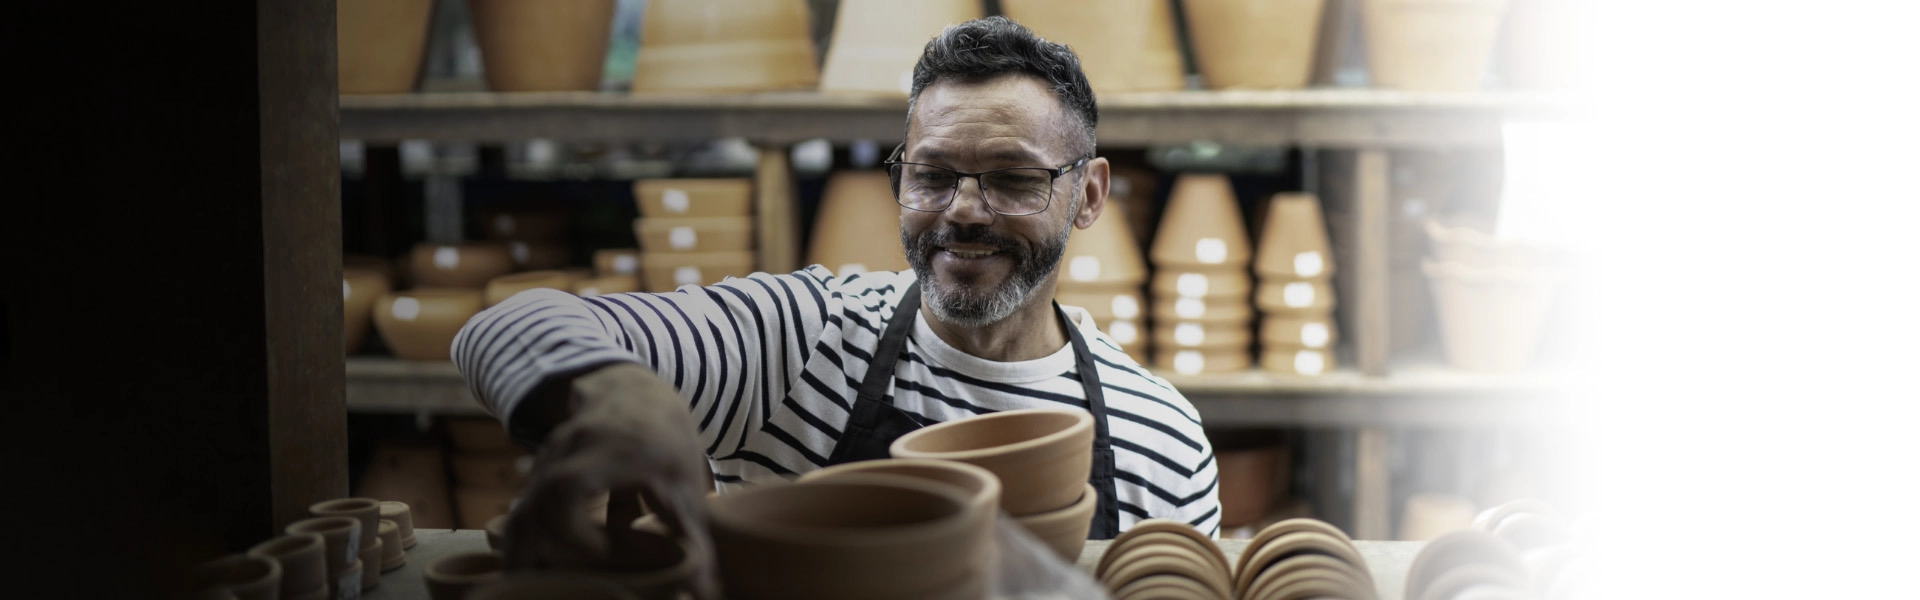 Homem branco sorrindo enquanto organiza peças feitas de barro.